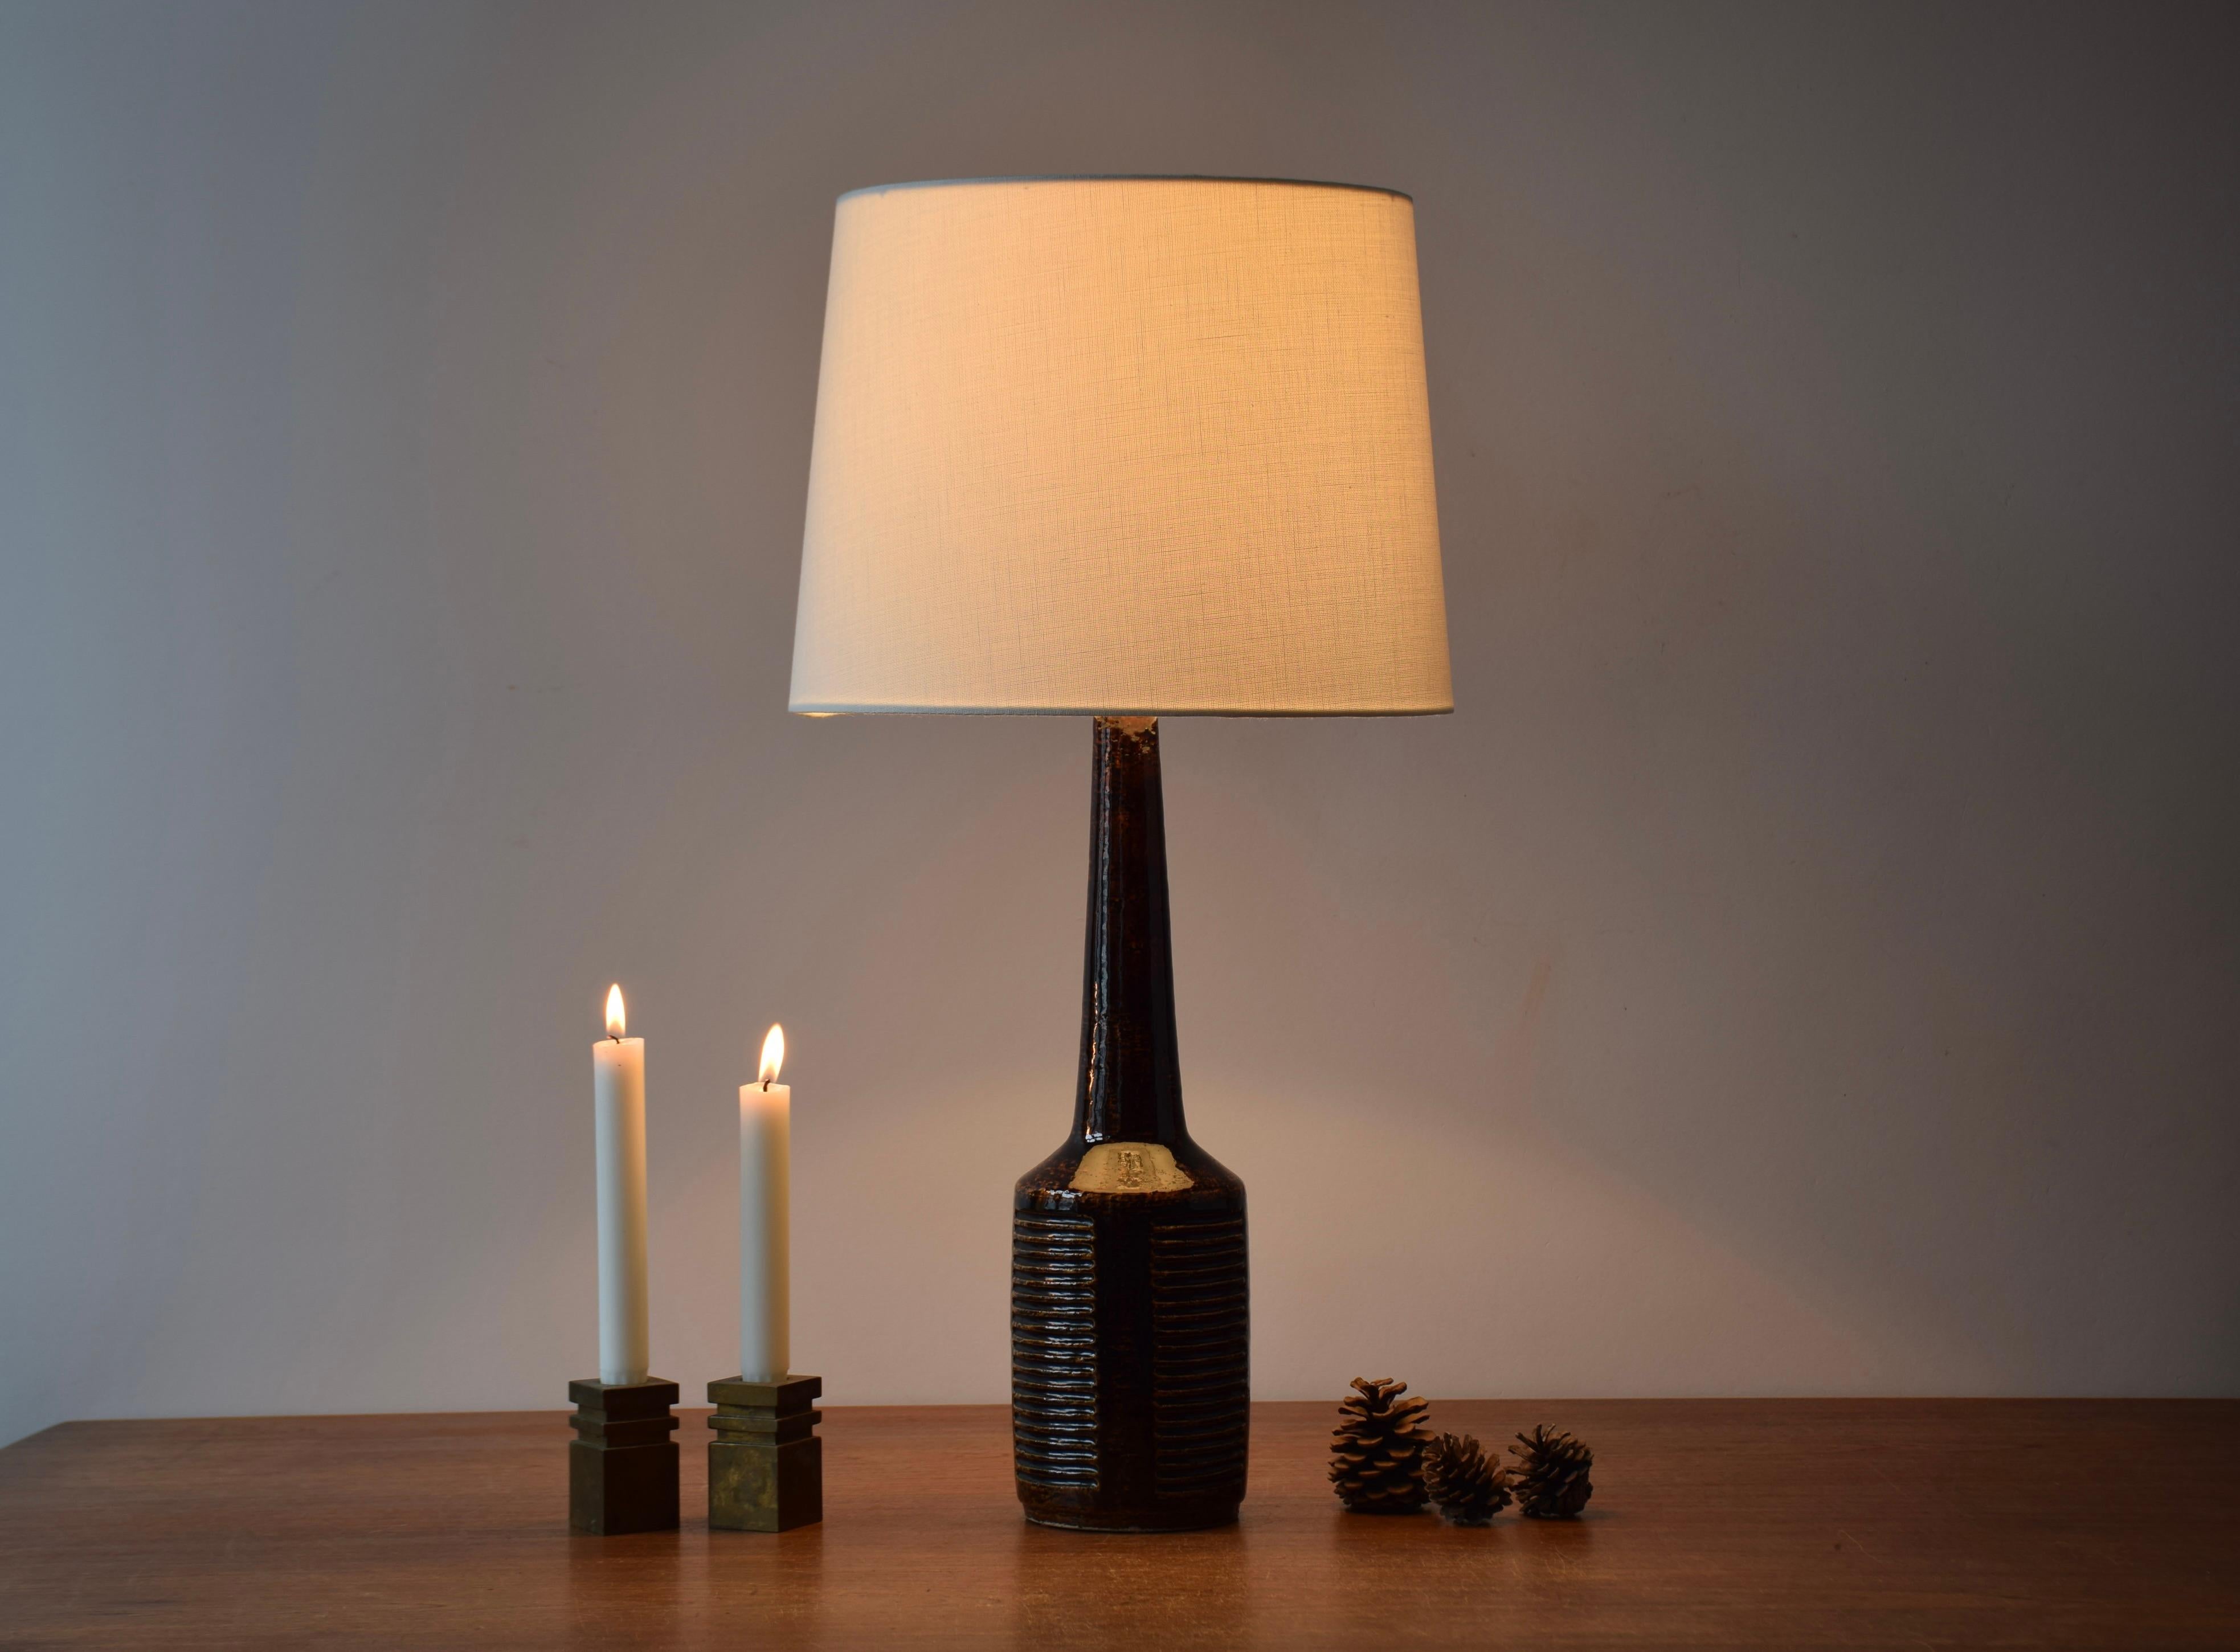 Hohe Tischlampe aus der Mitte des Jahrhunderts von Danish Palshus.
Die Leuchte wurde von Per Linnemann-Schmidt entworfen und in den 1960er Jahren hergestellt.
Sie hat eine warme dunkelbraune Glasur und wird aus Schamotte-Ton hergestellt, der eine